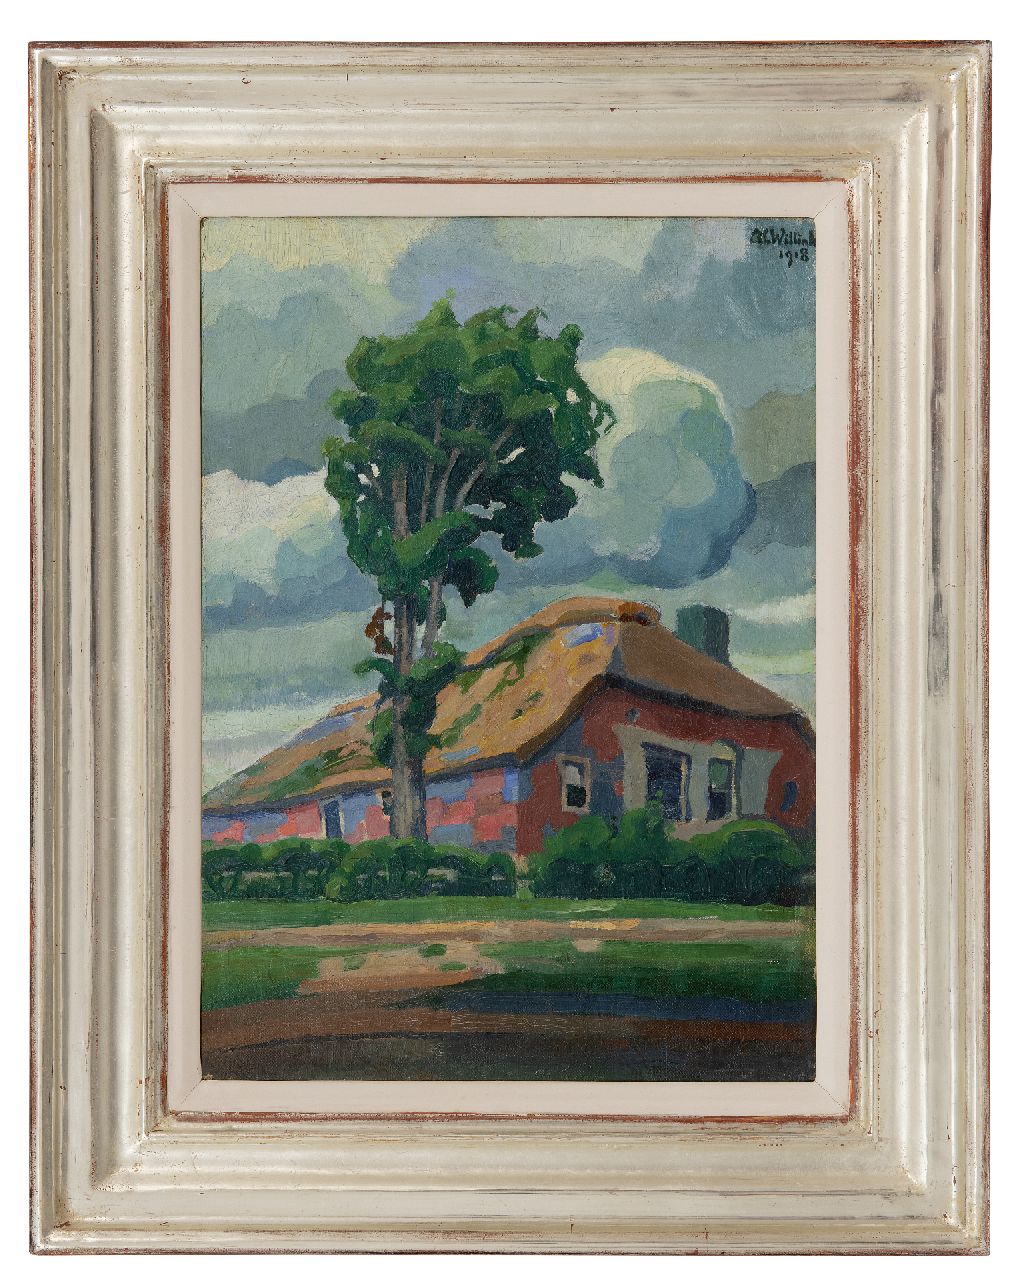 Willink A.C.  | Albert 'Carel' Willink | Gemälde zum Verkauf angeboten | Ein Bauernhof mit Baum, Öl auf Leinwand 48,0 x 34,3 cm, signed u.r. und datiert 1918